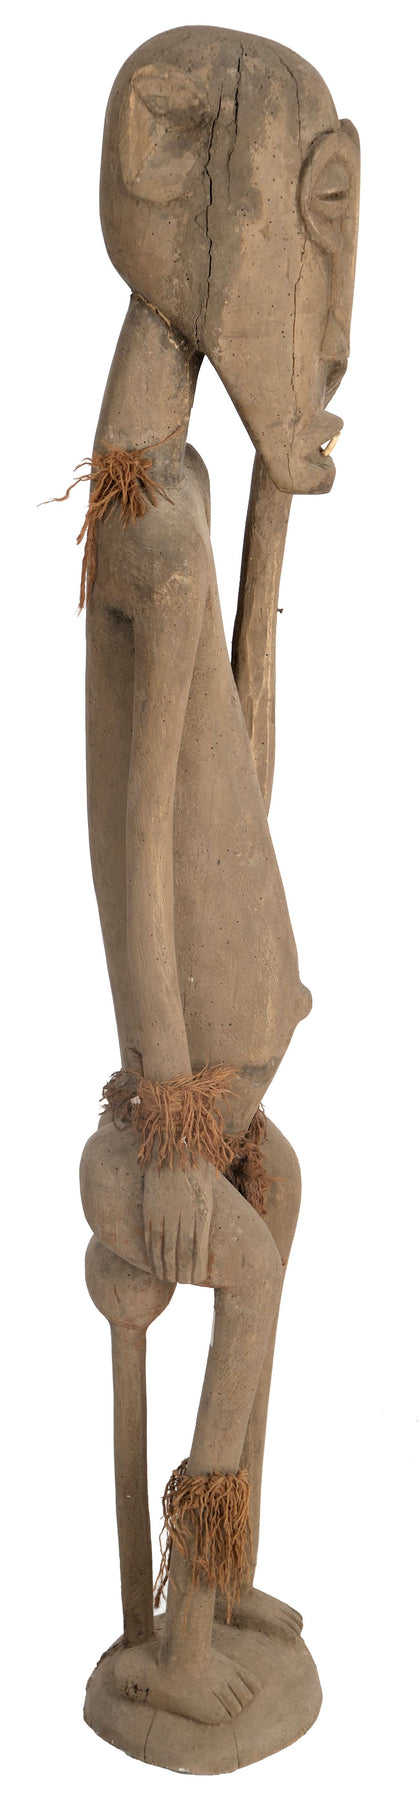 Maasai Figure, , African Sculptures - Artisera